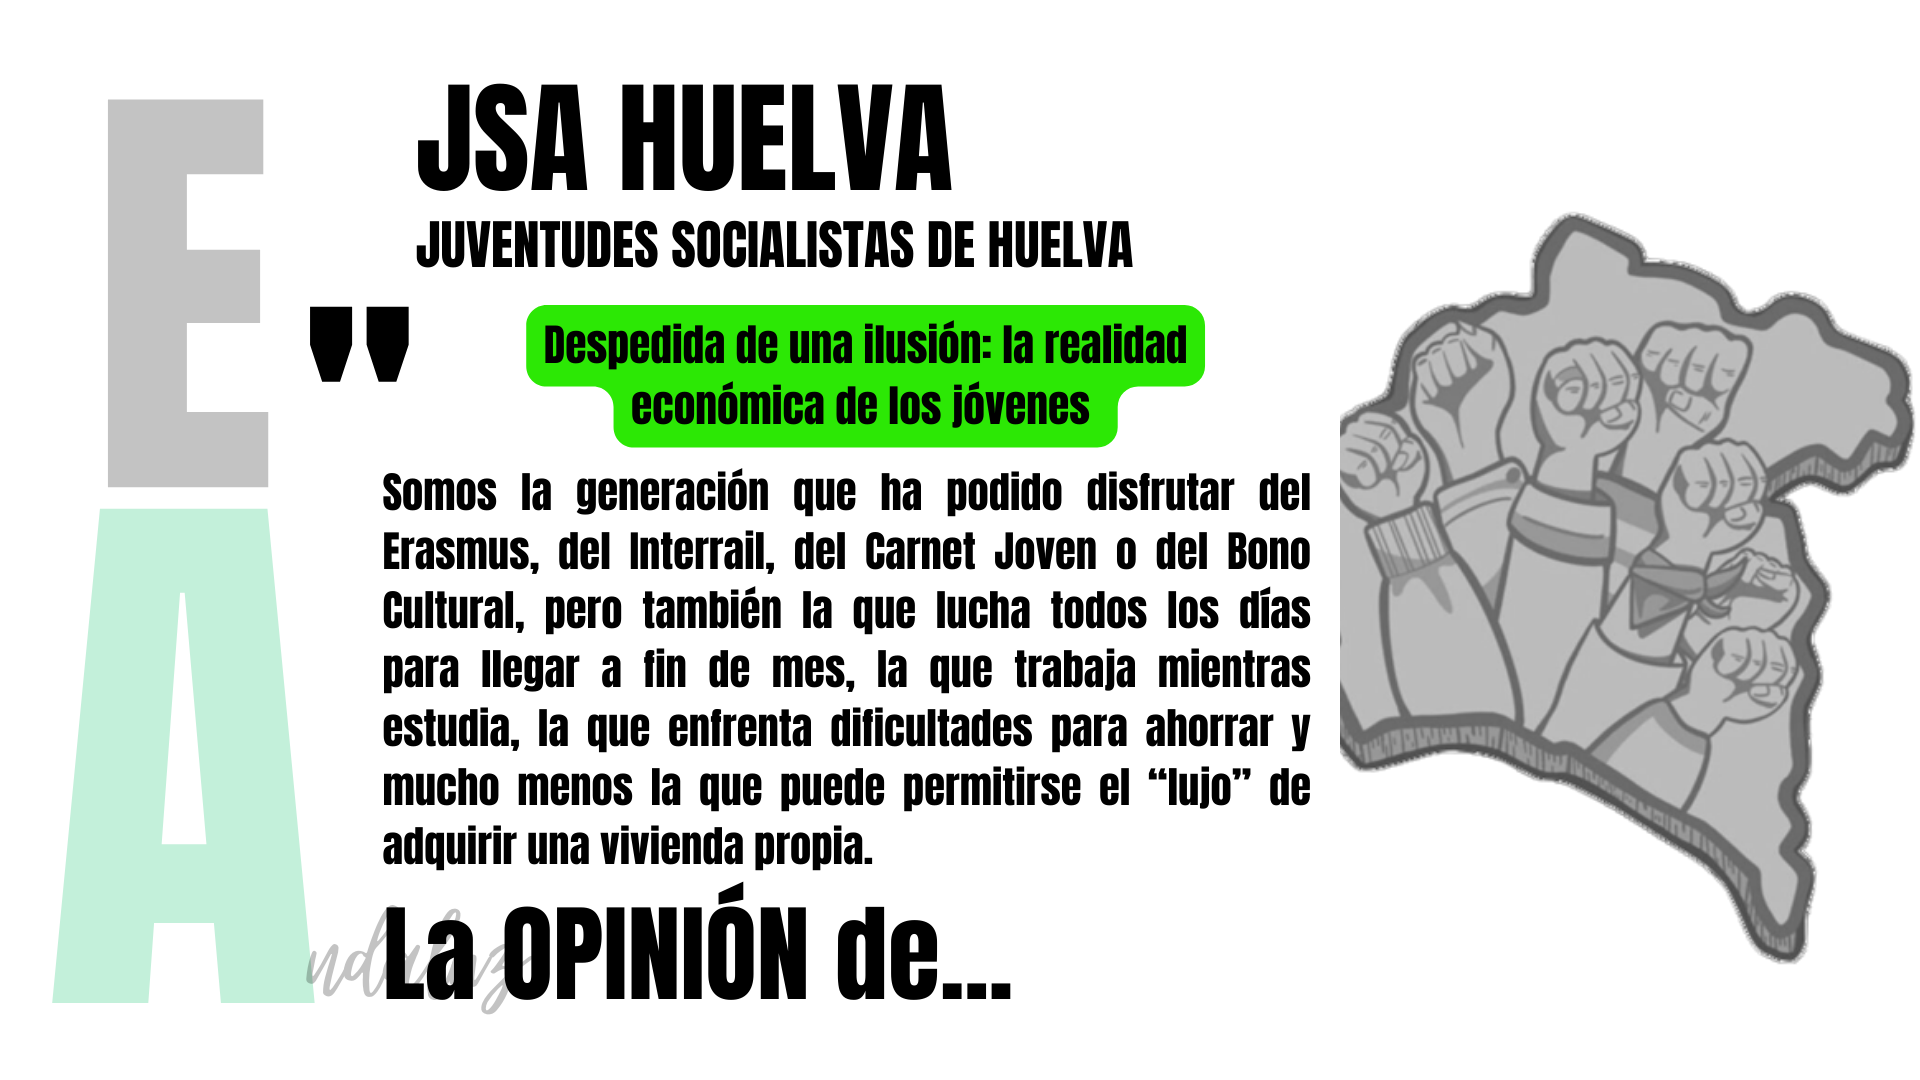 Artículo de opinión de Juventudes Socialistas de Huelva: "Despedida de una ilusión: la realidad económica de los jóvenes